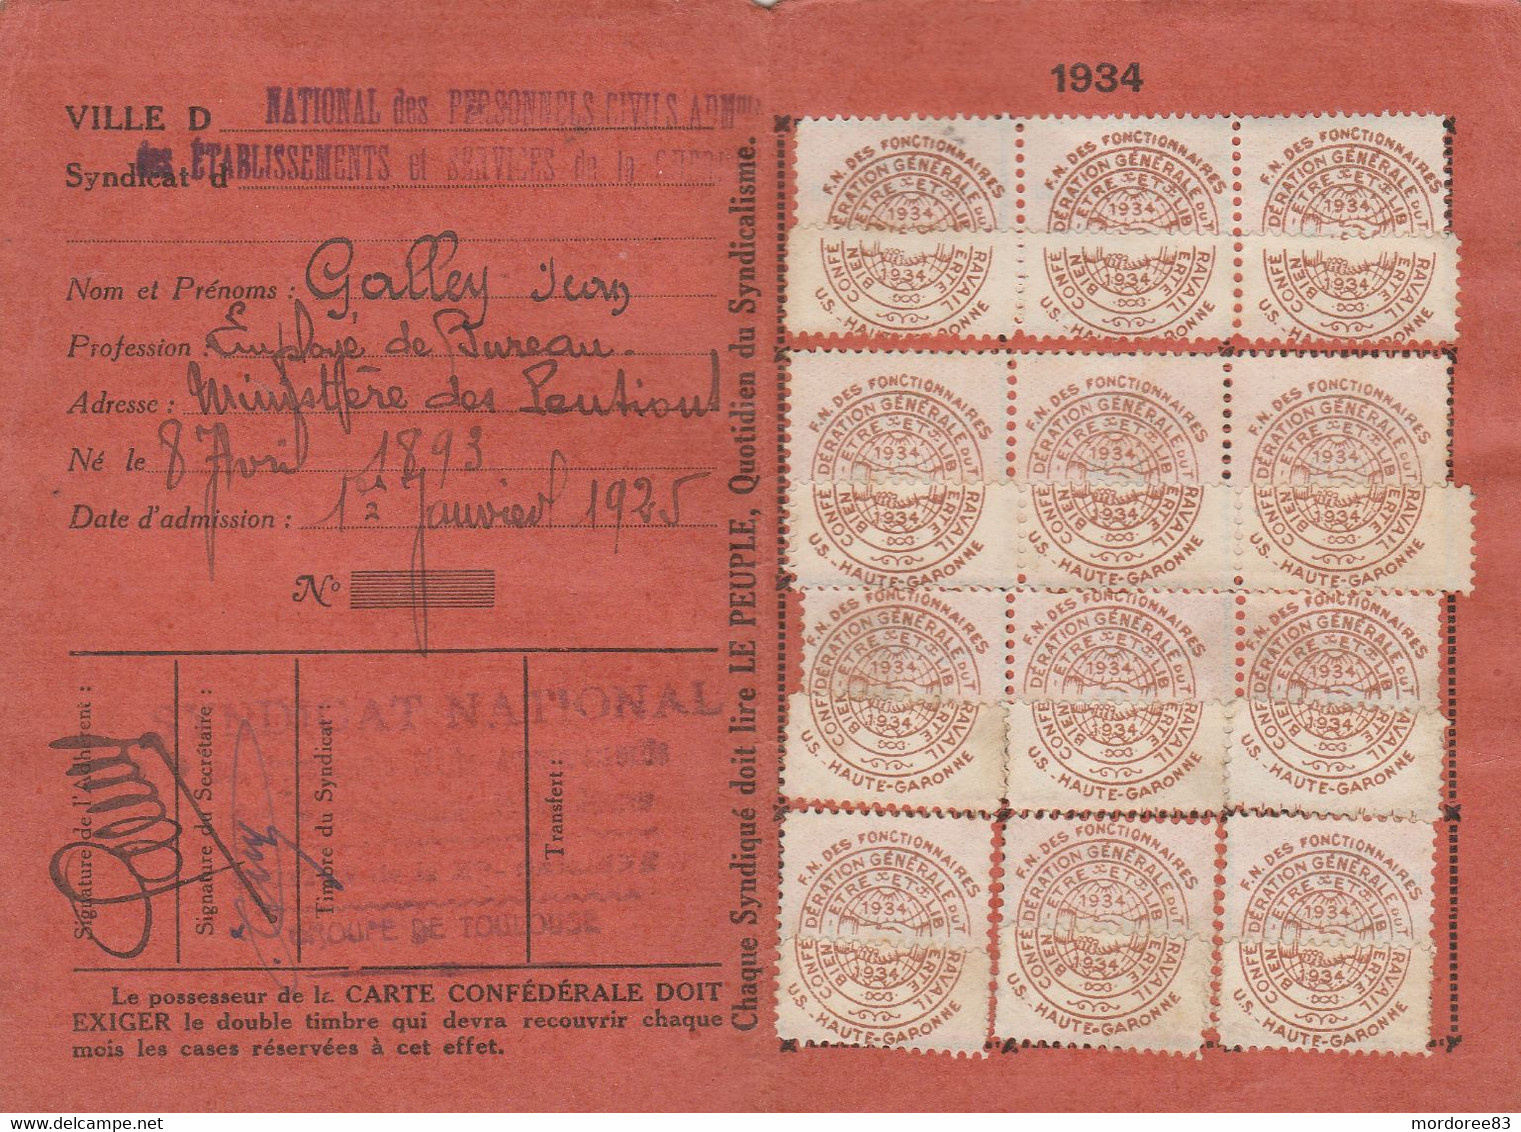 CARTE CONFEDERALE CGT 1934 - AIR - GUERRE -MARINE -                                    TDA109 - Vakbonden